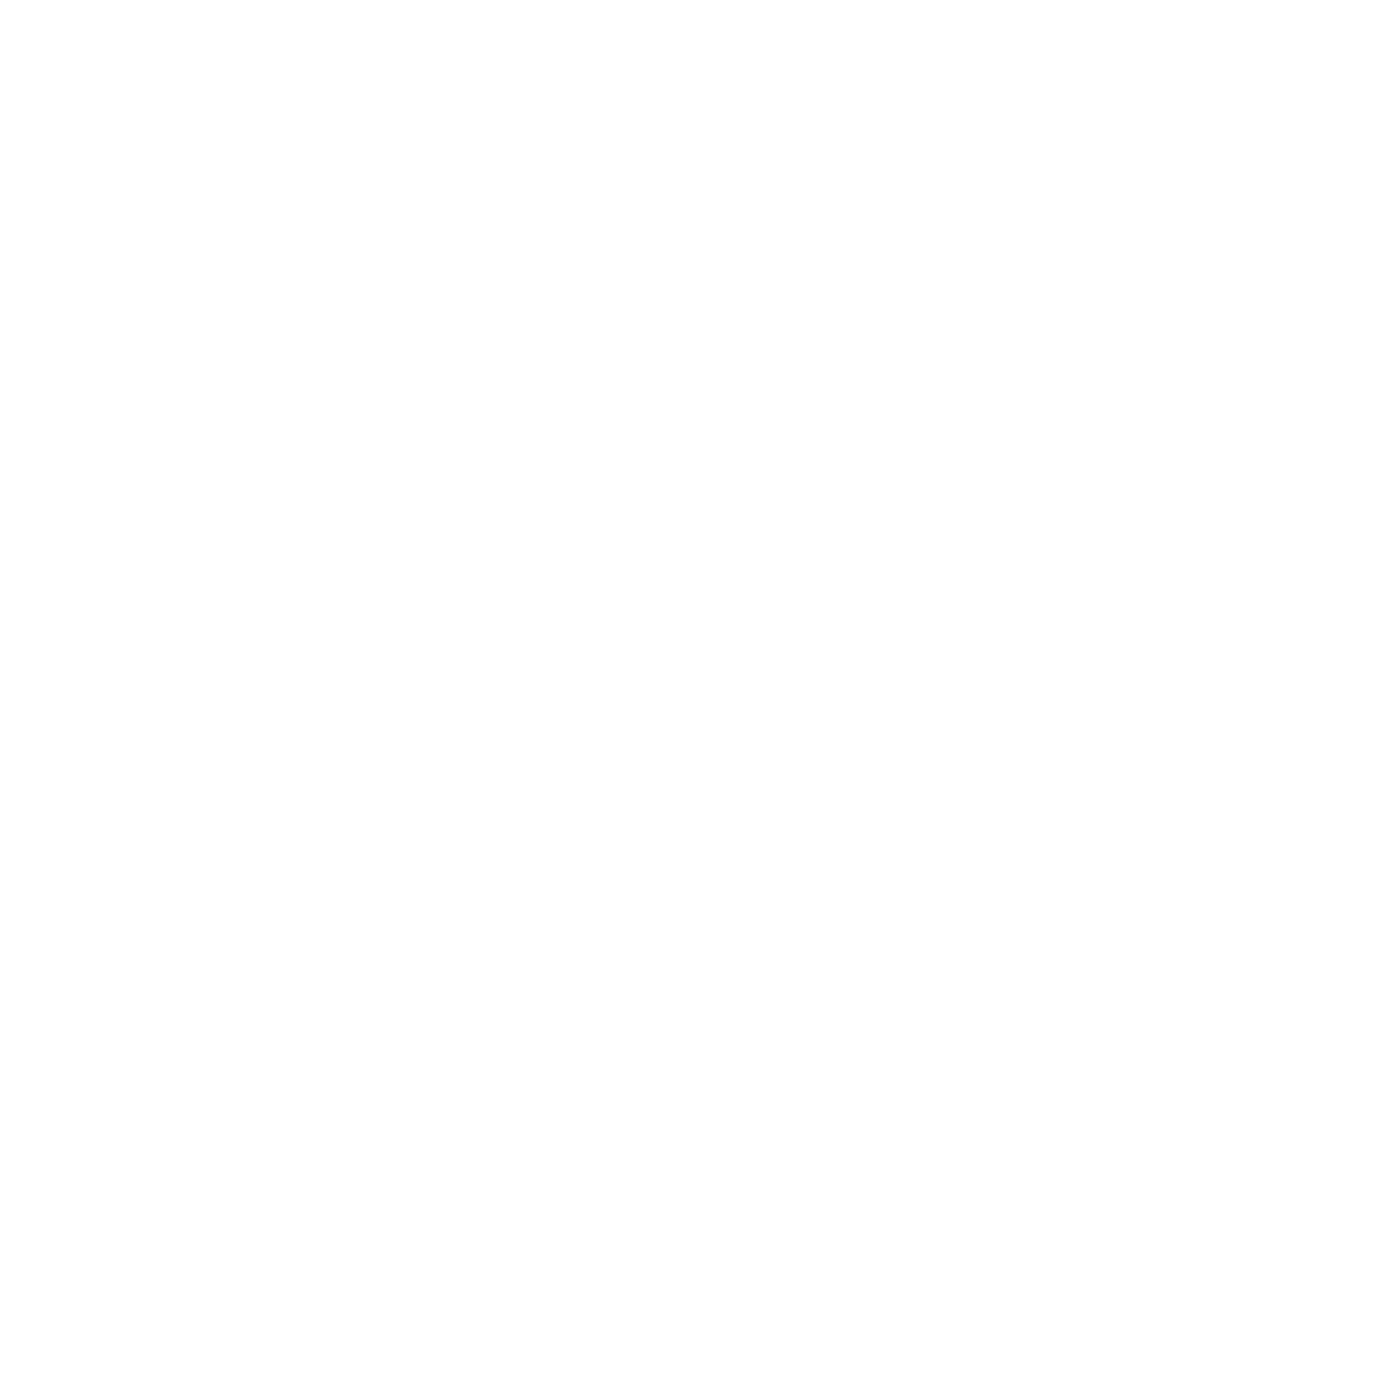 Encounter the Kingdom Ministries